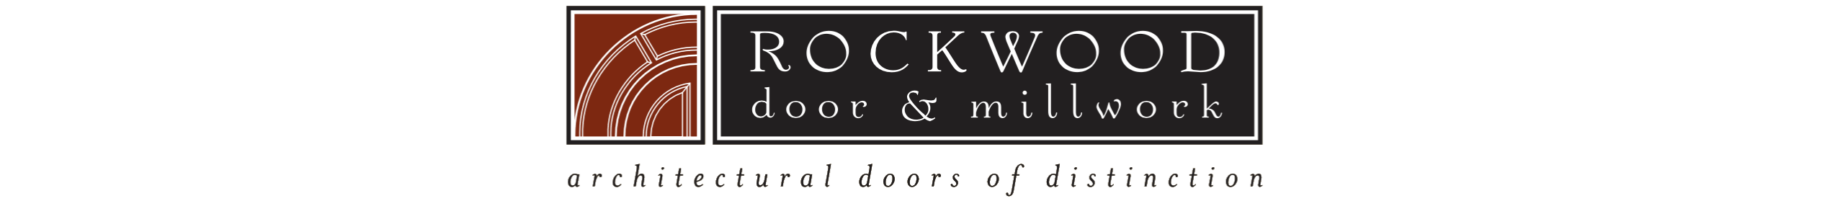 Rockwood's old logo